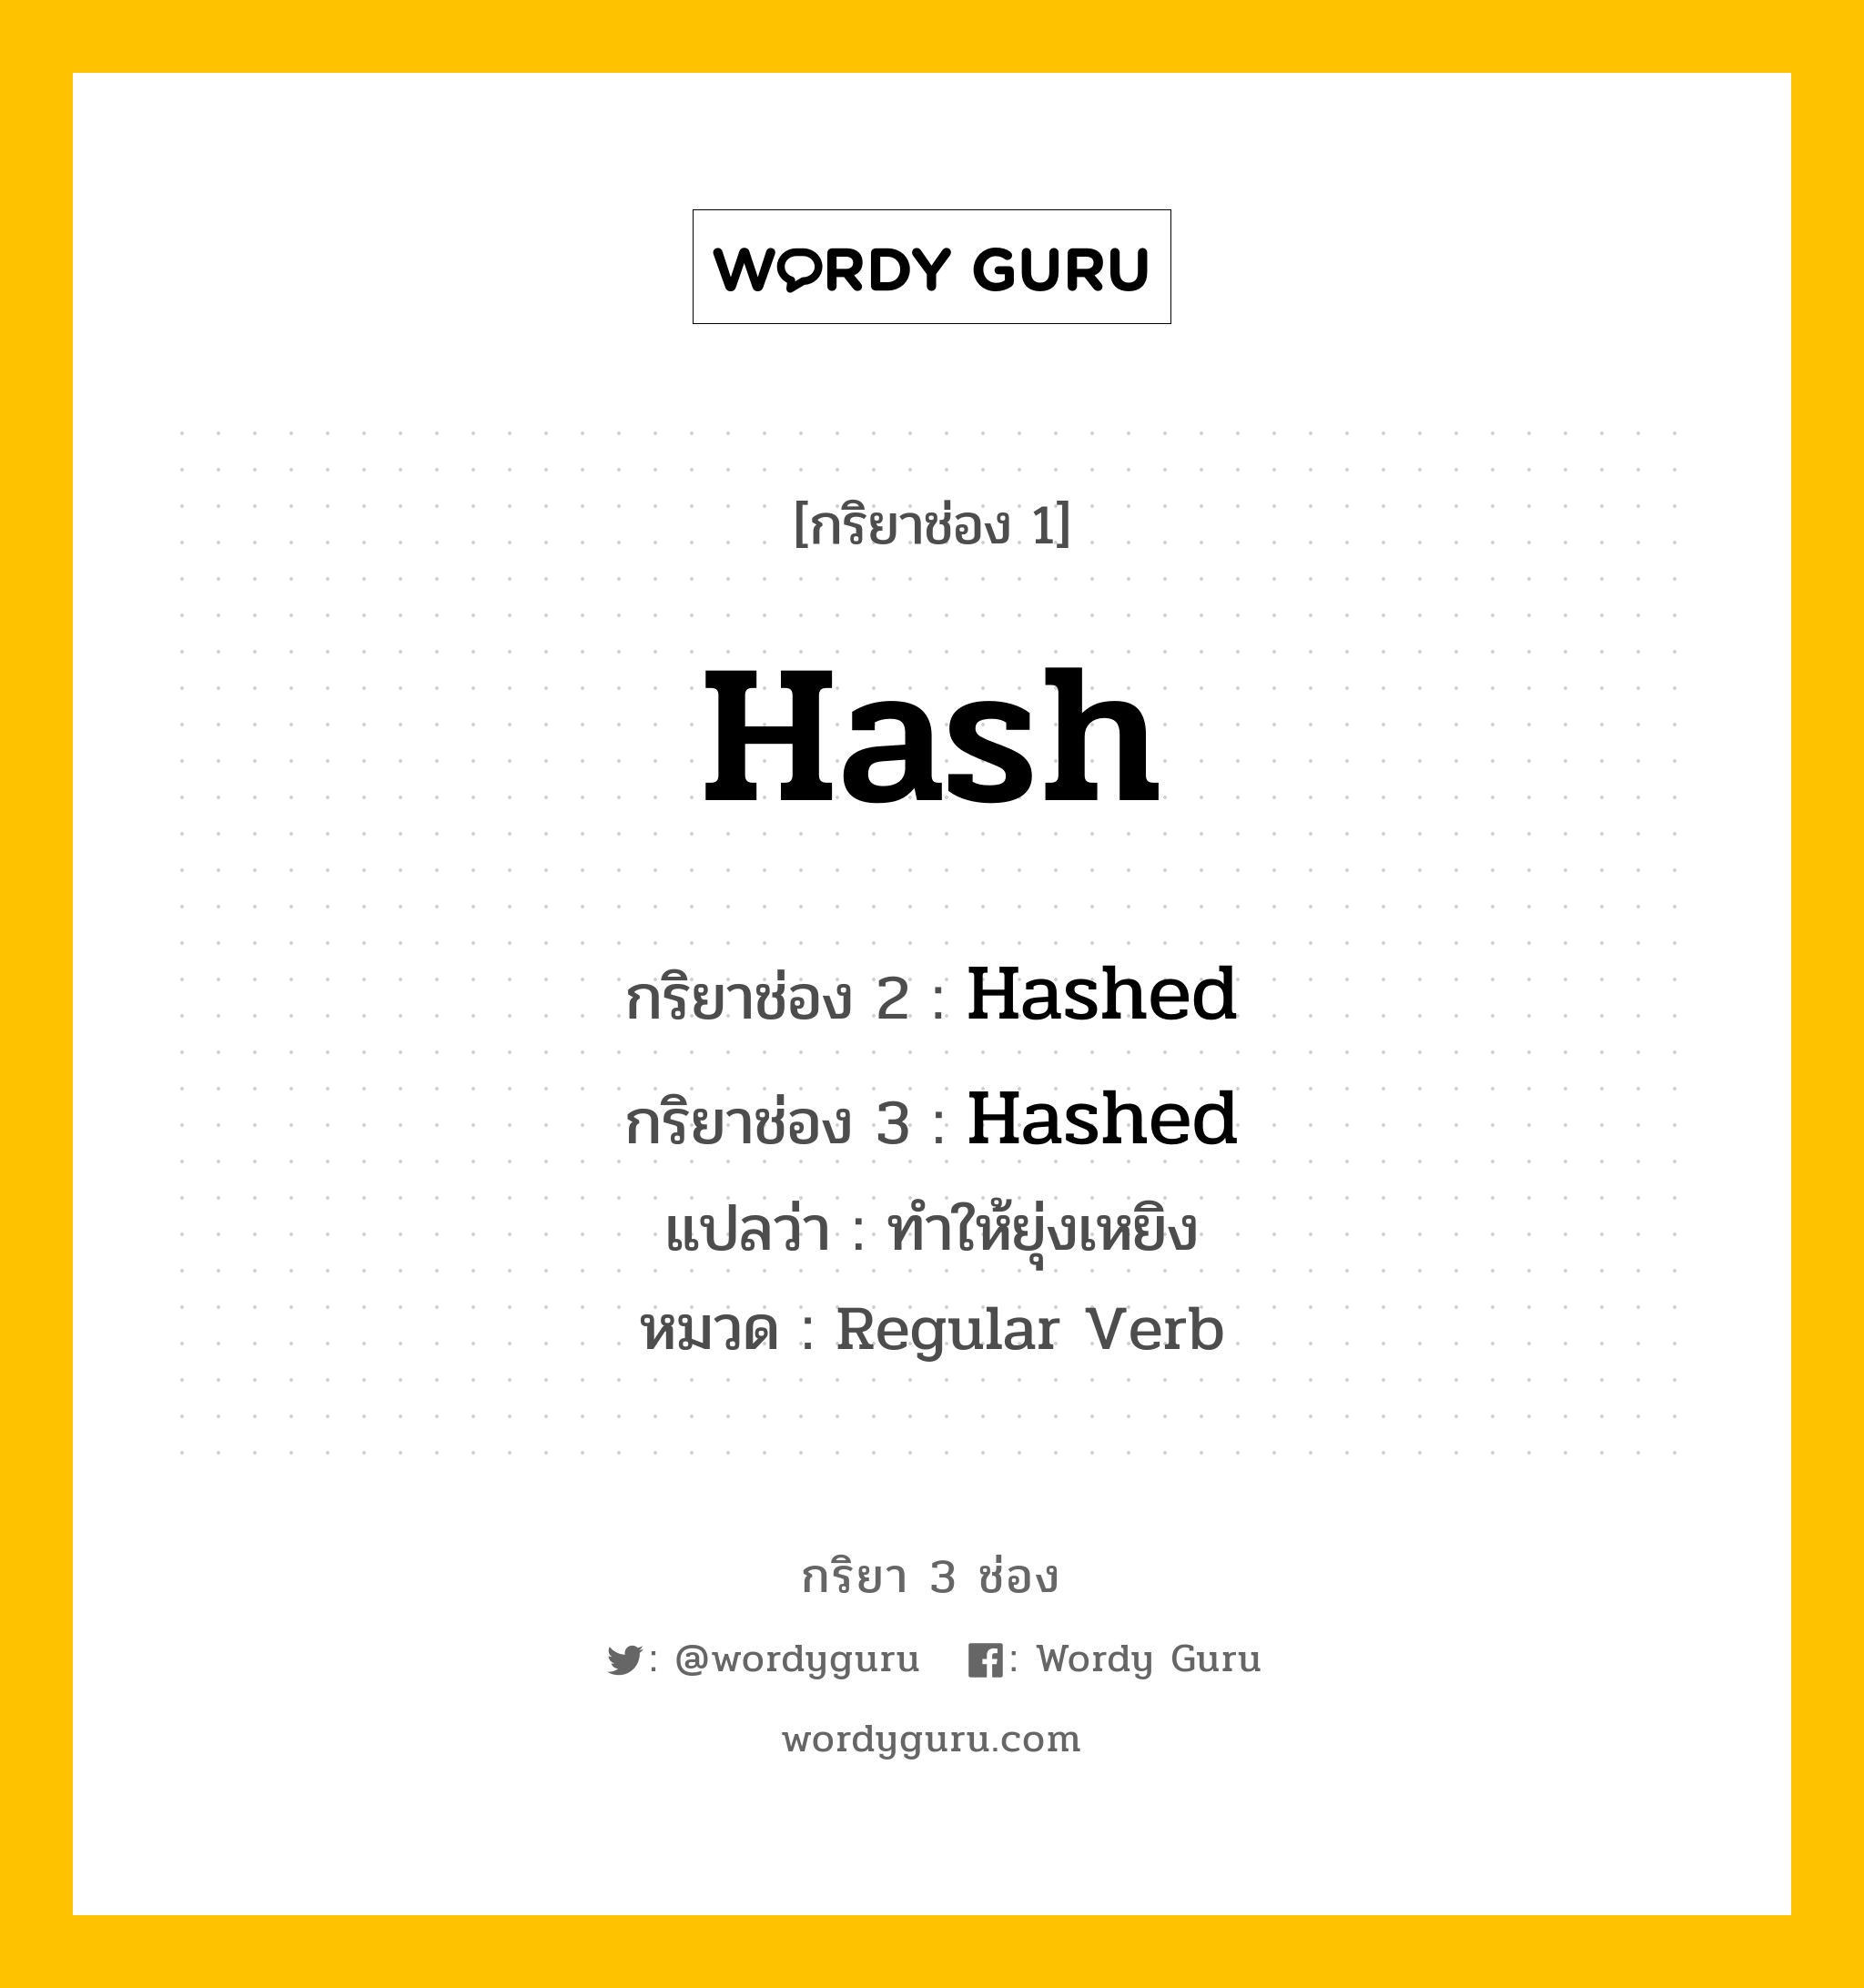 กริยา 3 ช่อง: Hash ช่อง 2 Hash ช่อง 3 คืออะไร, กริยาช่อง 1 Hash กริยาช่อง 2 Hashed กริยาช่อง 3 Hashed แปลว่า ทำให้ยุ่งเหยิง หมวด Regular Verb หมวด Regular Verb